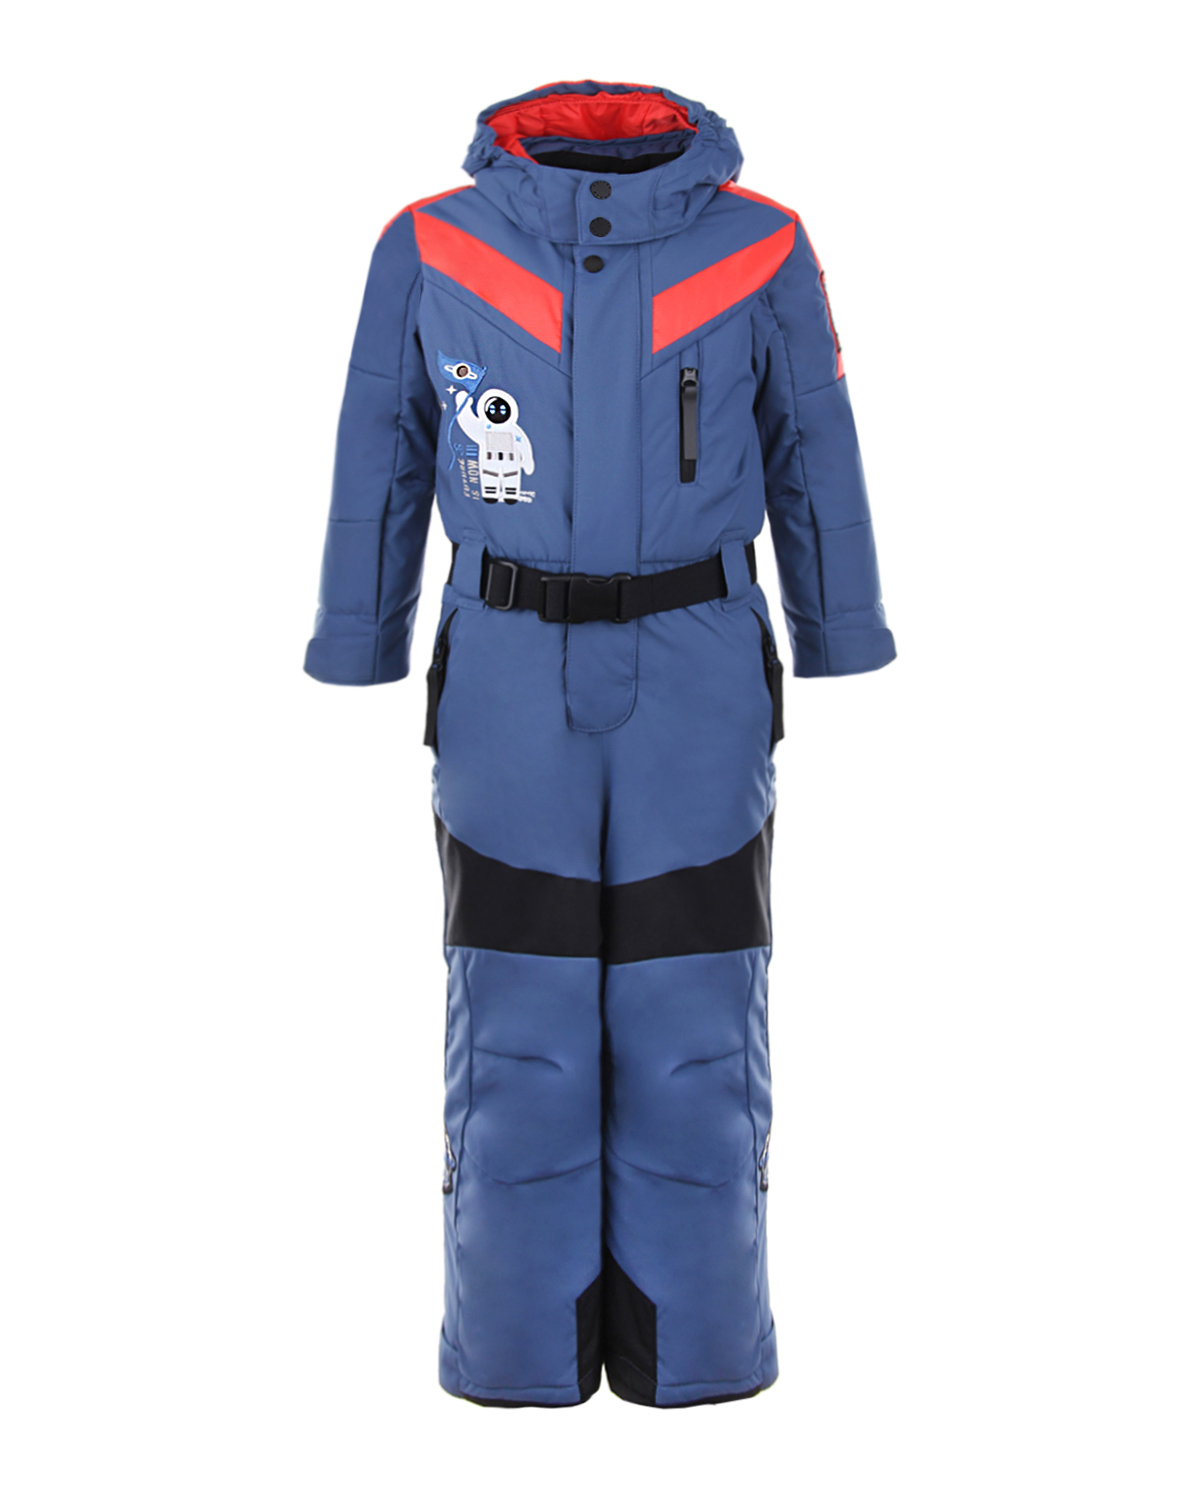 Комбинезон с патчами "космос" Poivre Blanc детский, размер 86, цвет синий